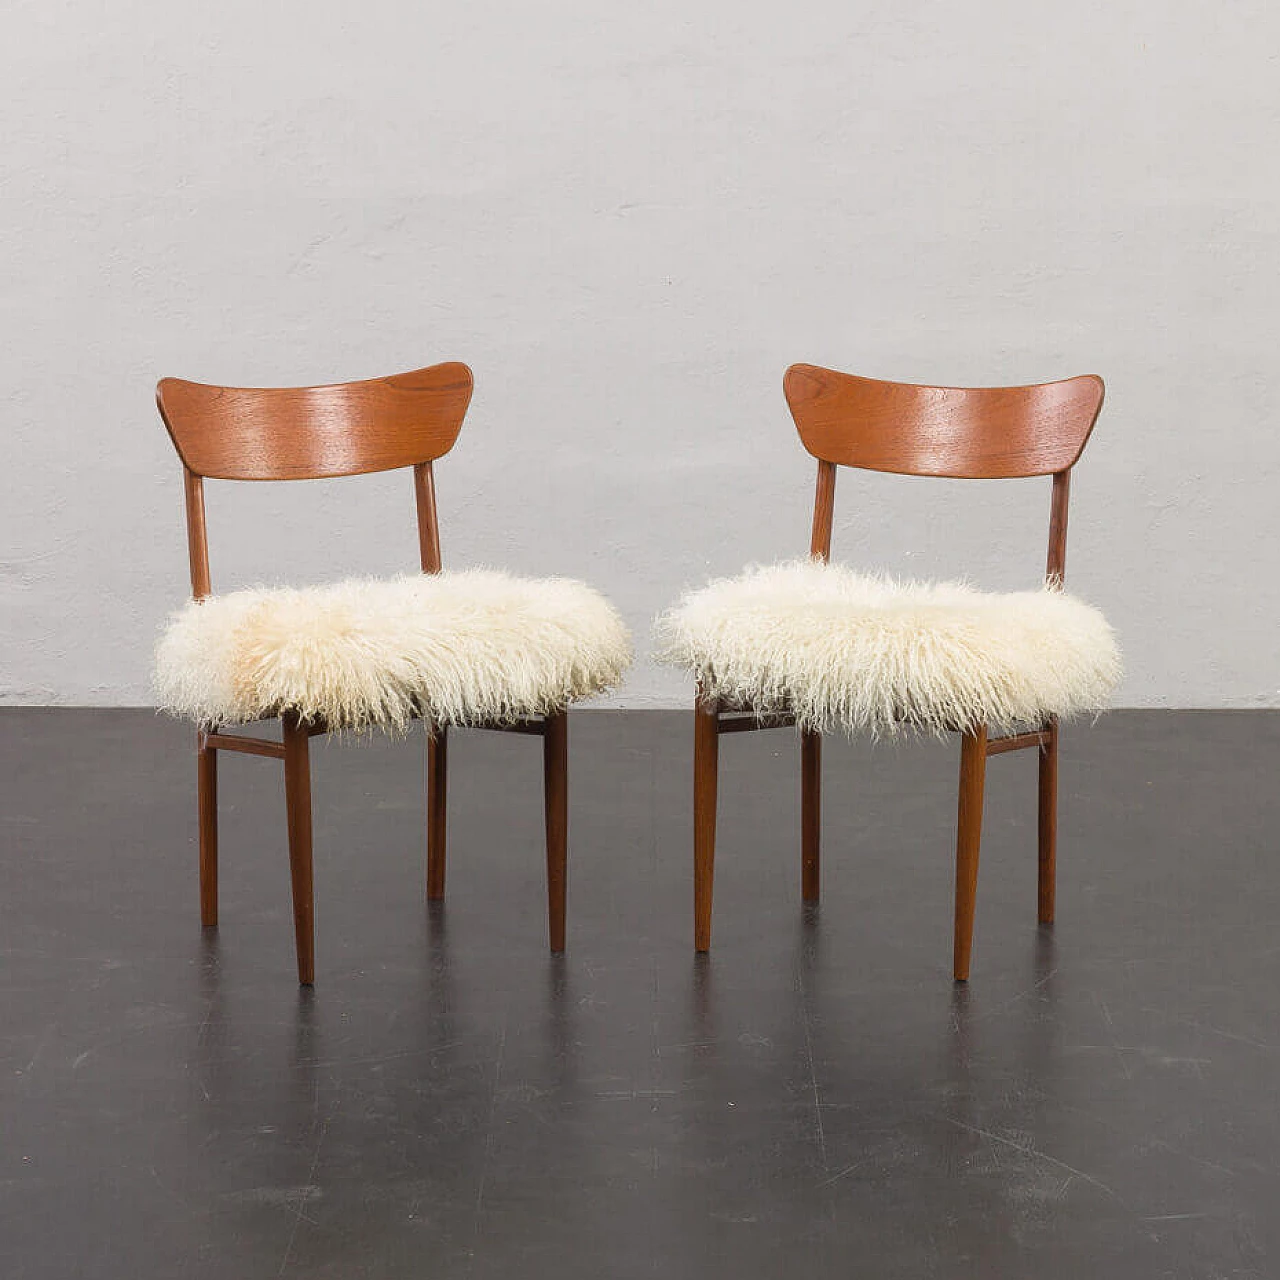 Coppia di sedie danesi in teak massiccio con pelle di pecora a pelo lungo nello stile di Hans Wegner, anni '60 1